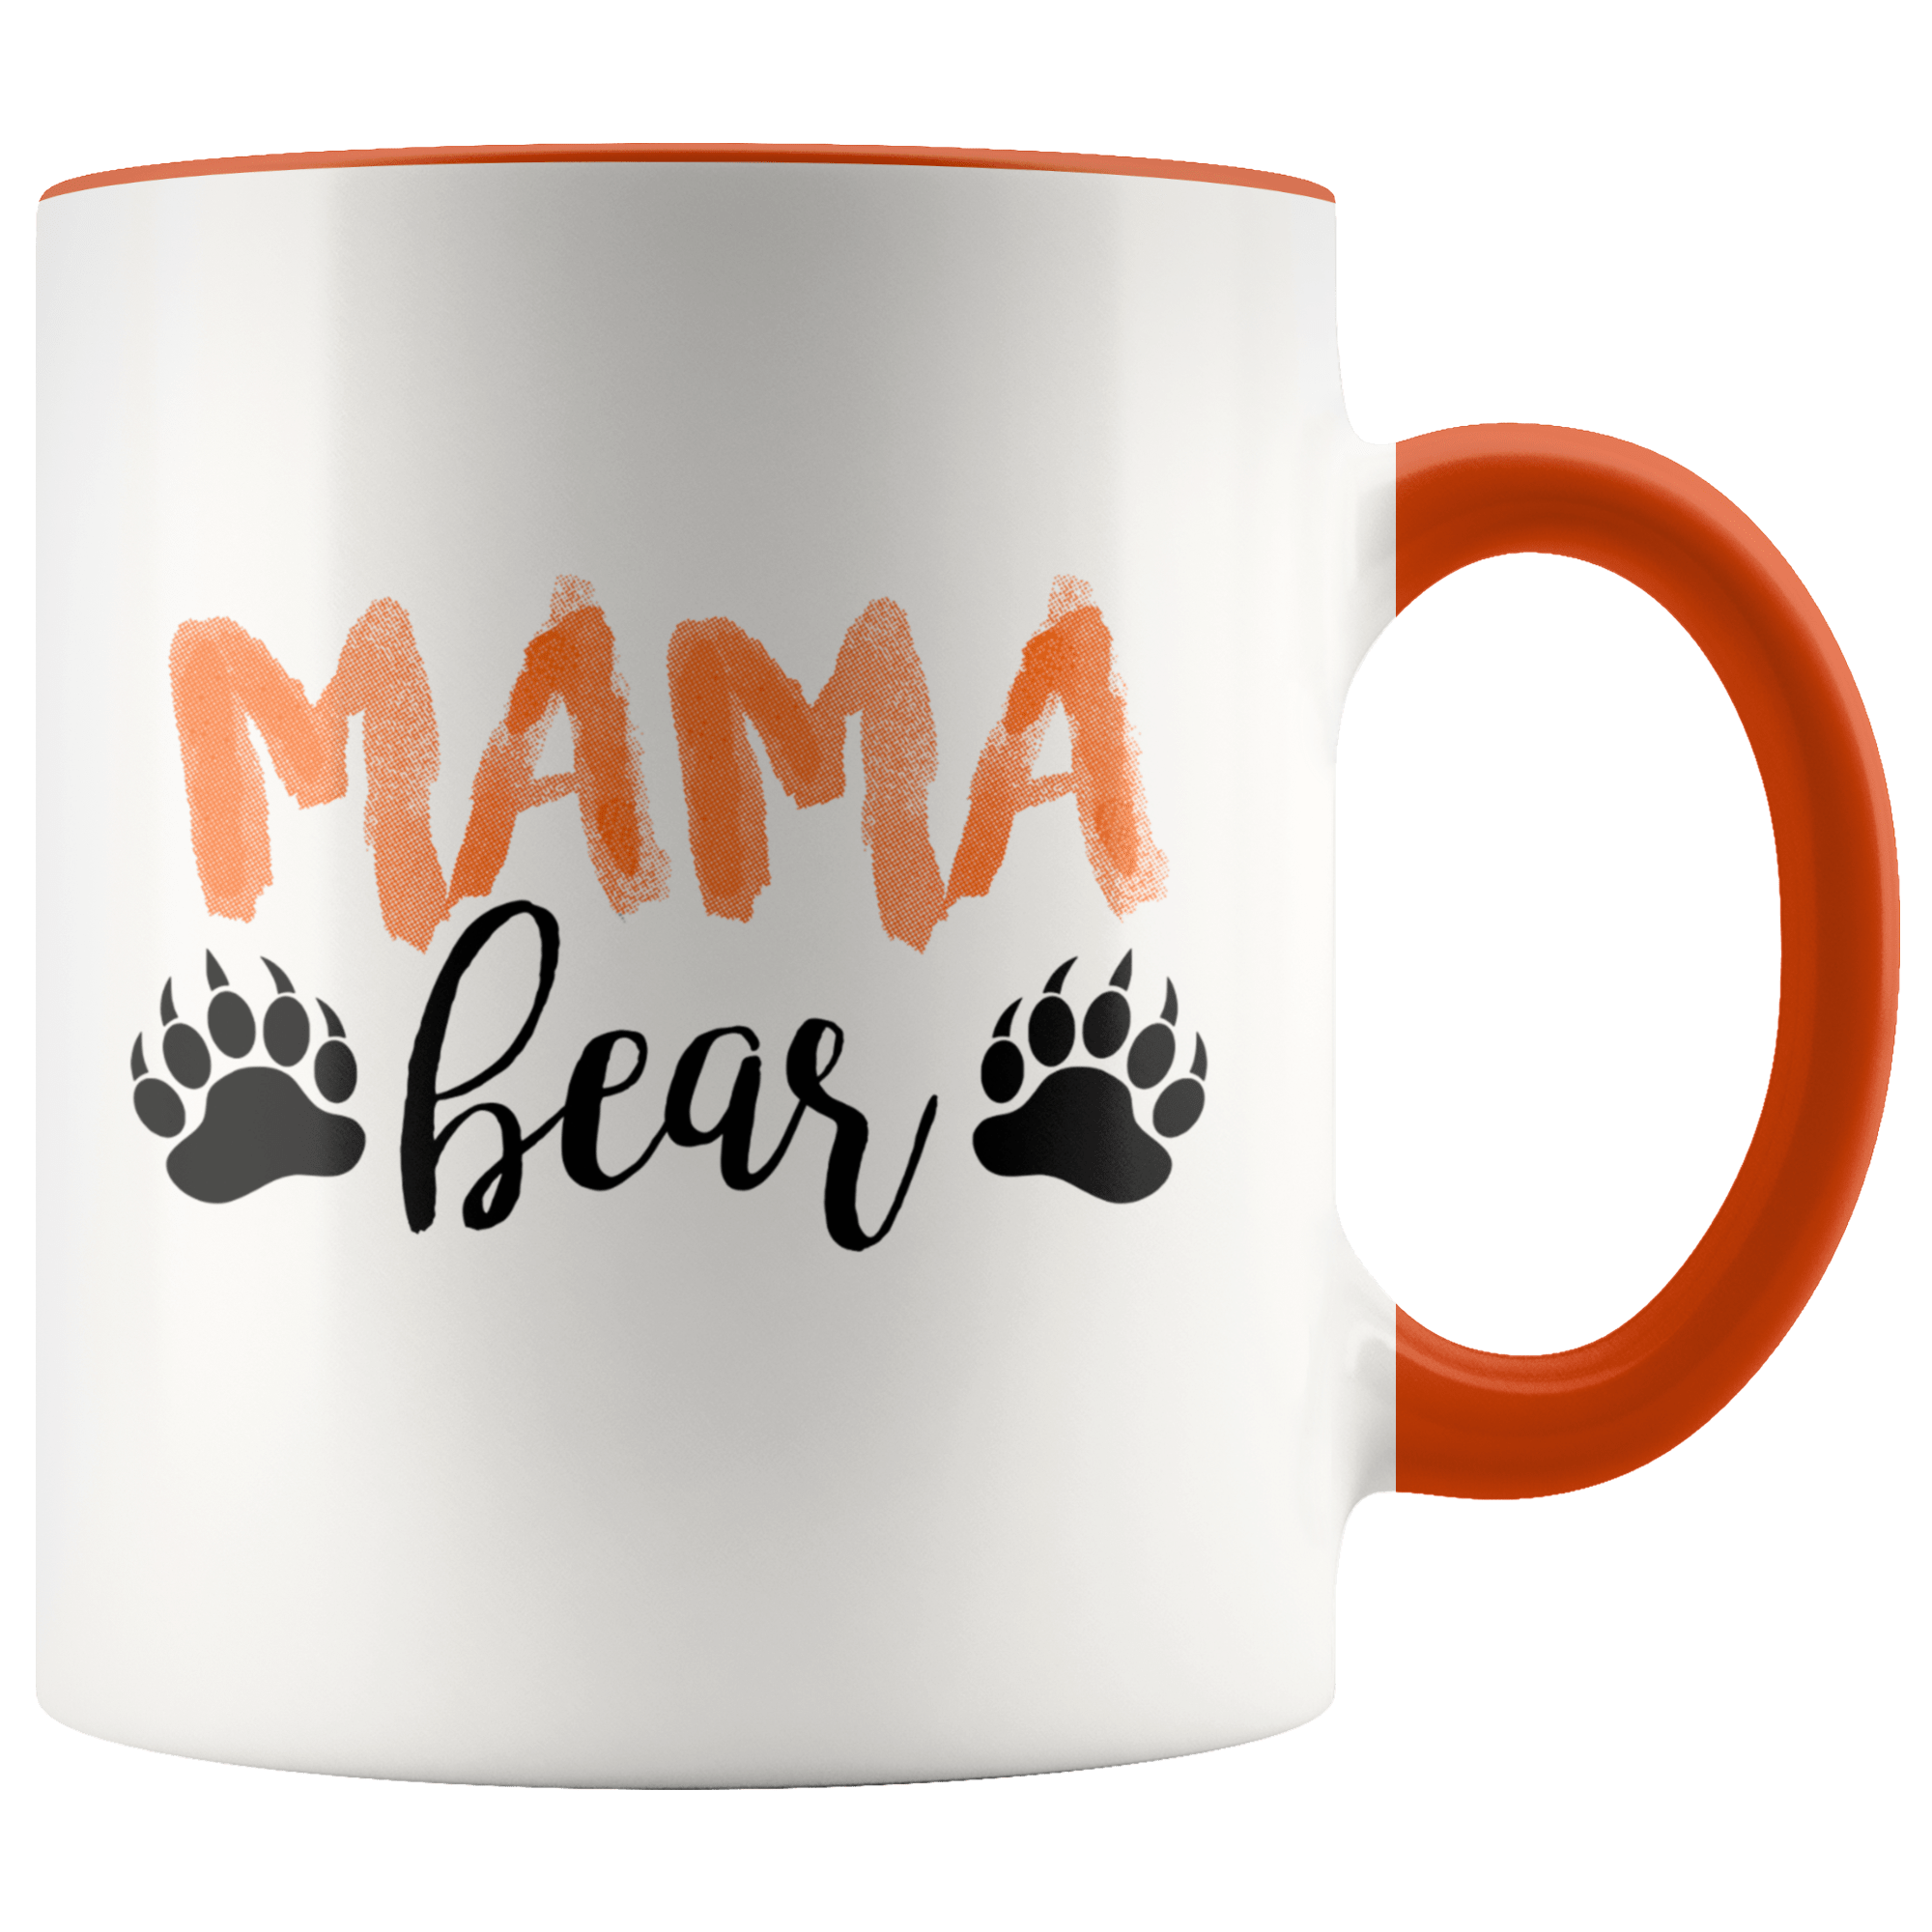 Mama Bear Mug by Jane Jenni from Jane Jenni – Urban General Store